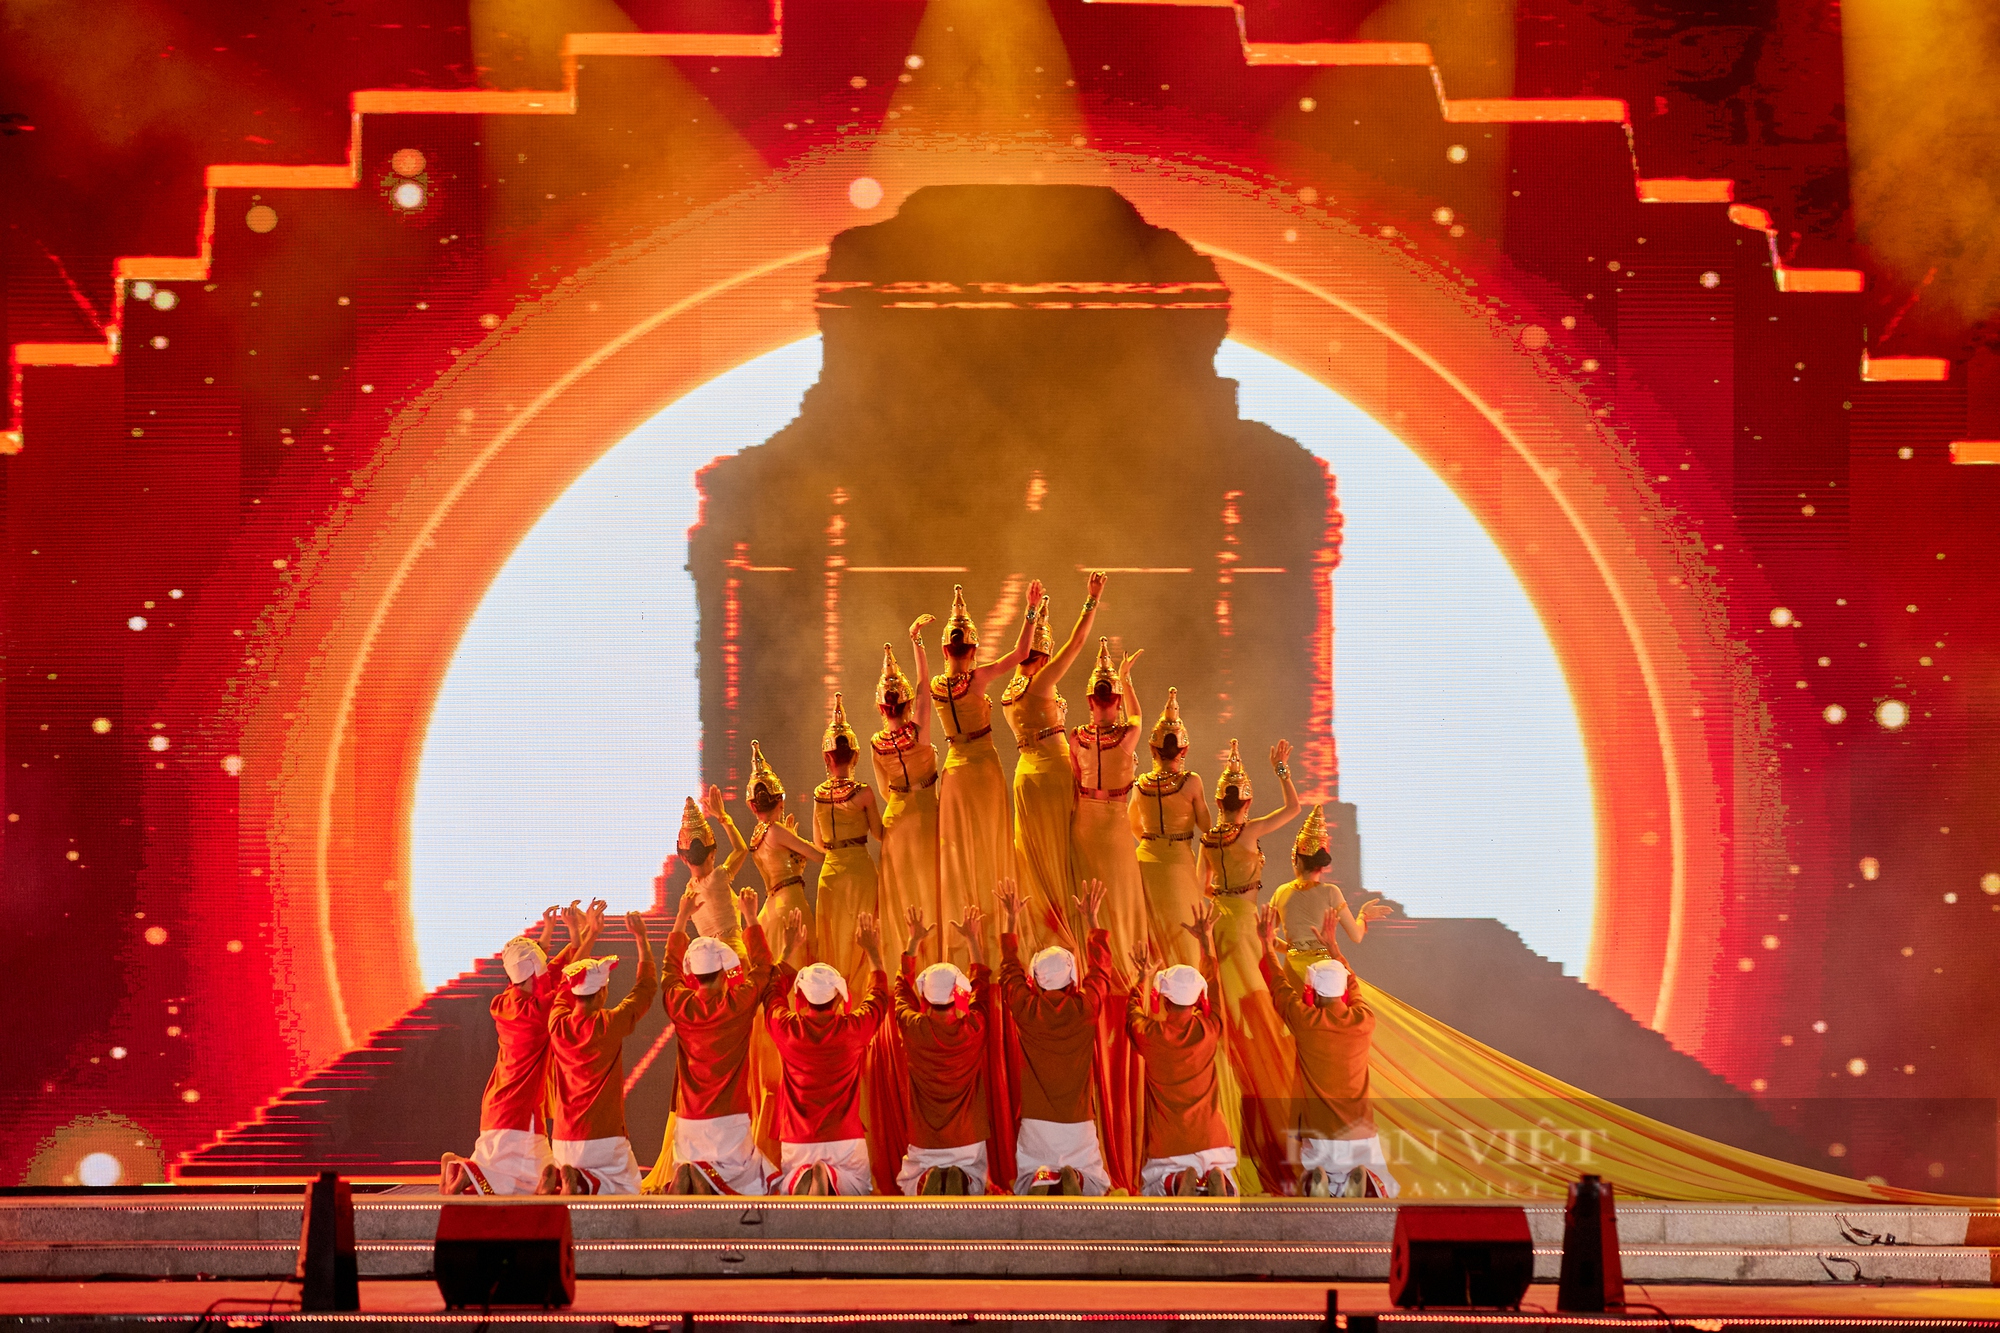 20 ngàn khán giả bùng nổ với đại nhạc hội quy mô lớn tại Đà Nẵng - Ảnh 6.